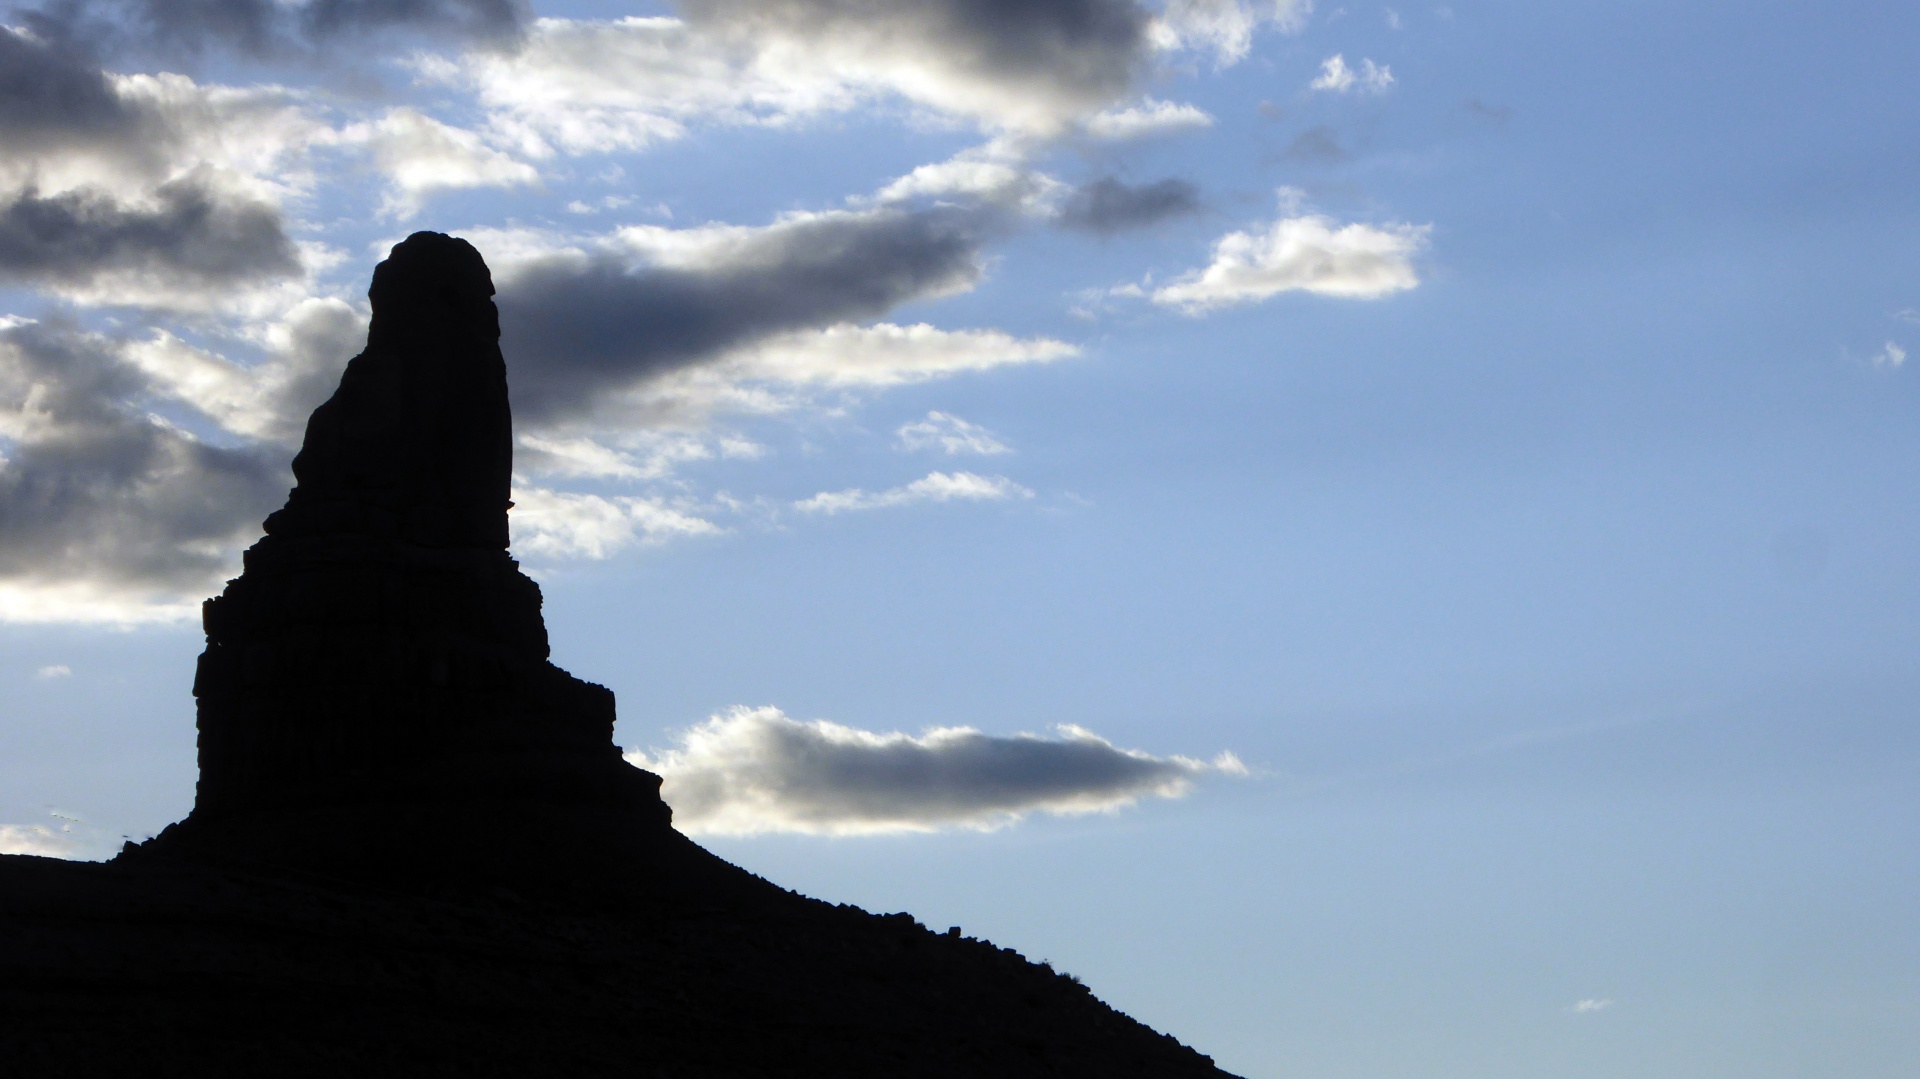 desert mountain silhouette free photo